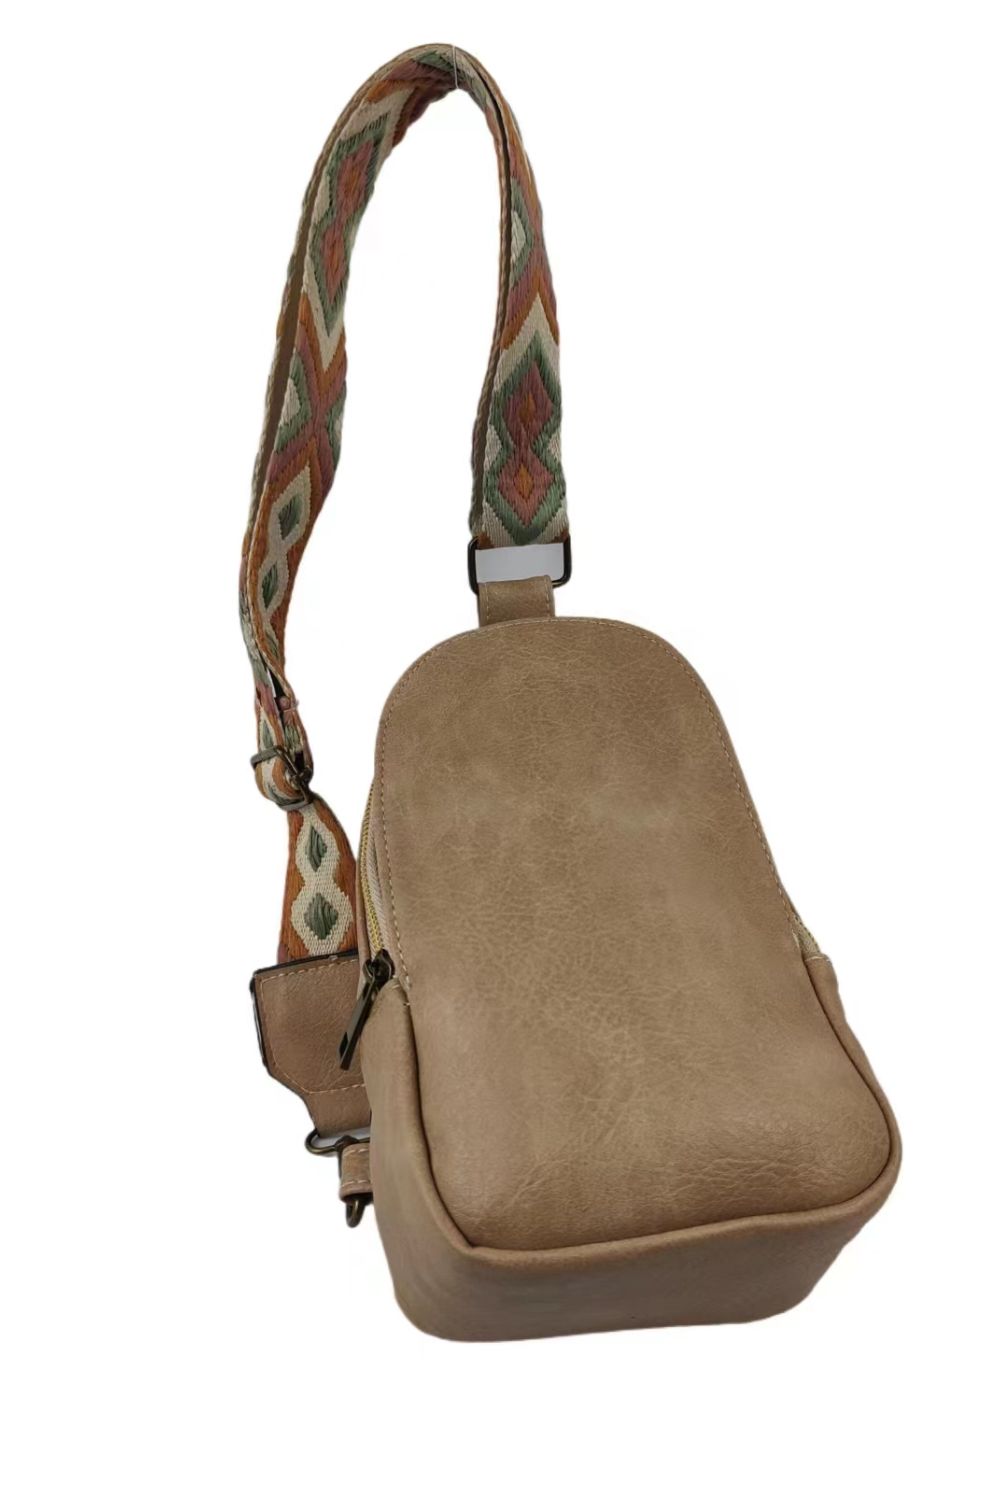 - Adjustable Strap PU Leather Sling Bag - handbag at TFC&H Co.